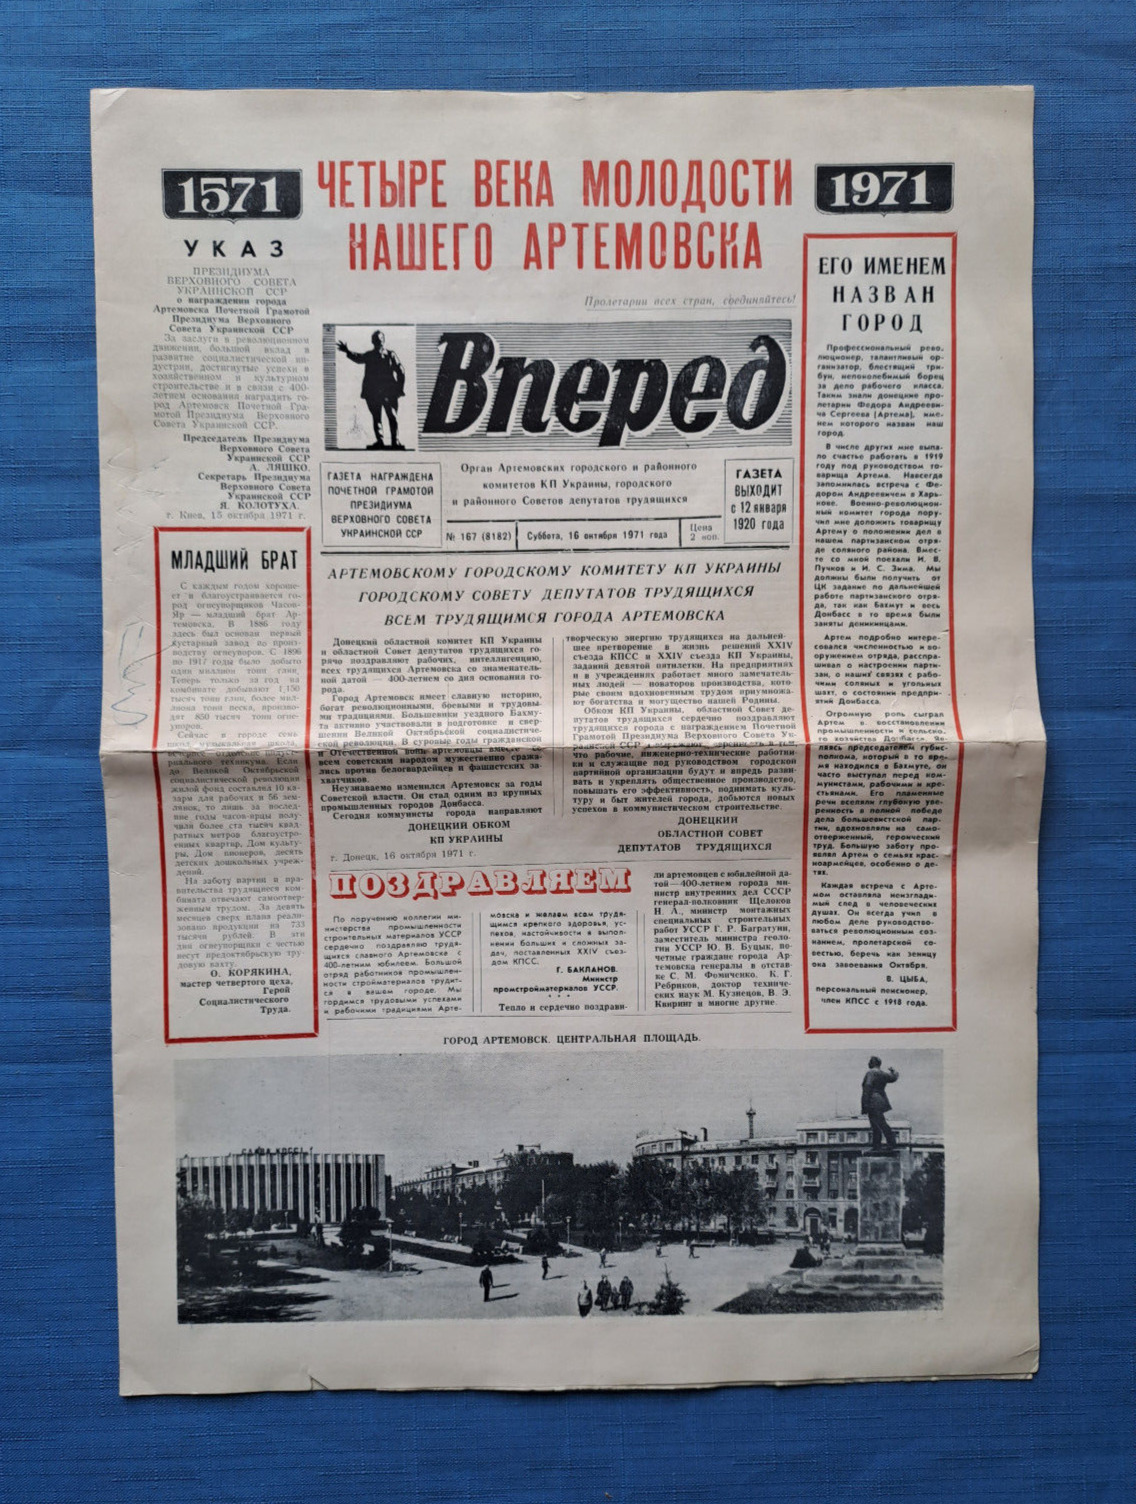 1971 Newspaper Bakhmut Artemovsk 400 years Ukrainian hero city Donetsk Region